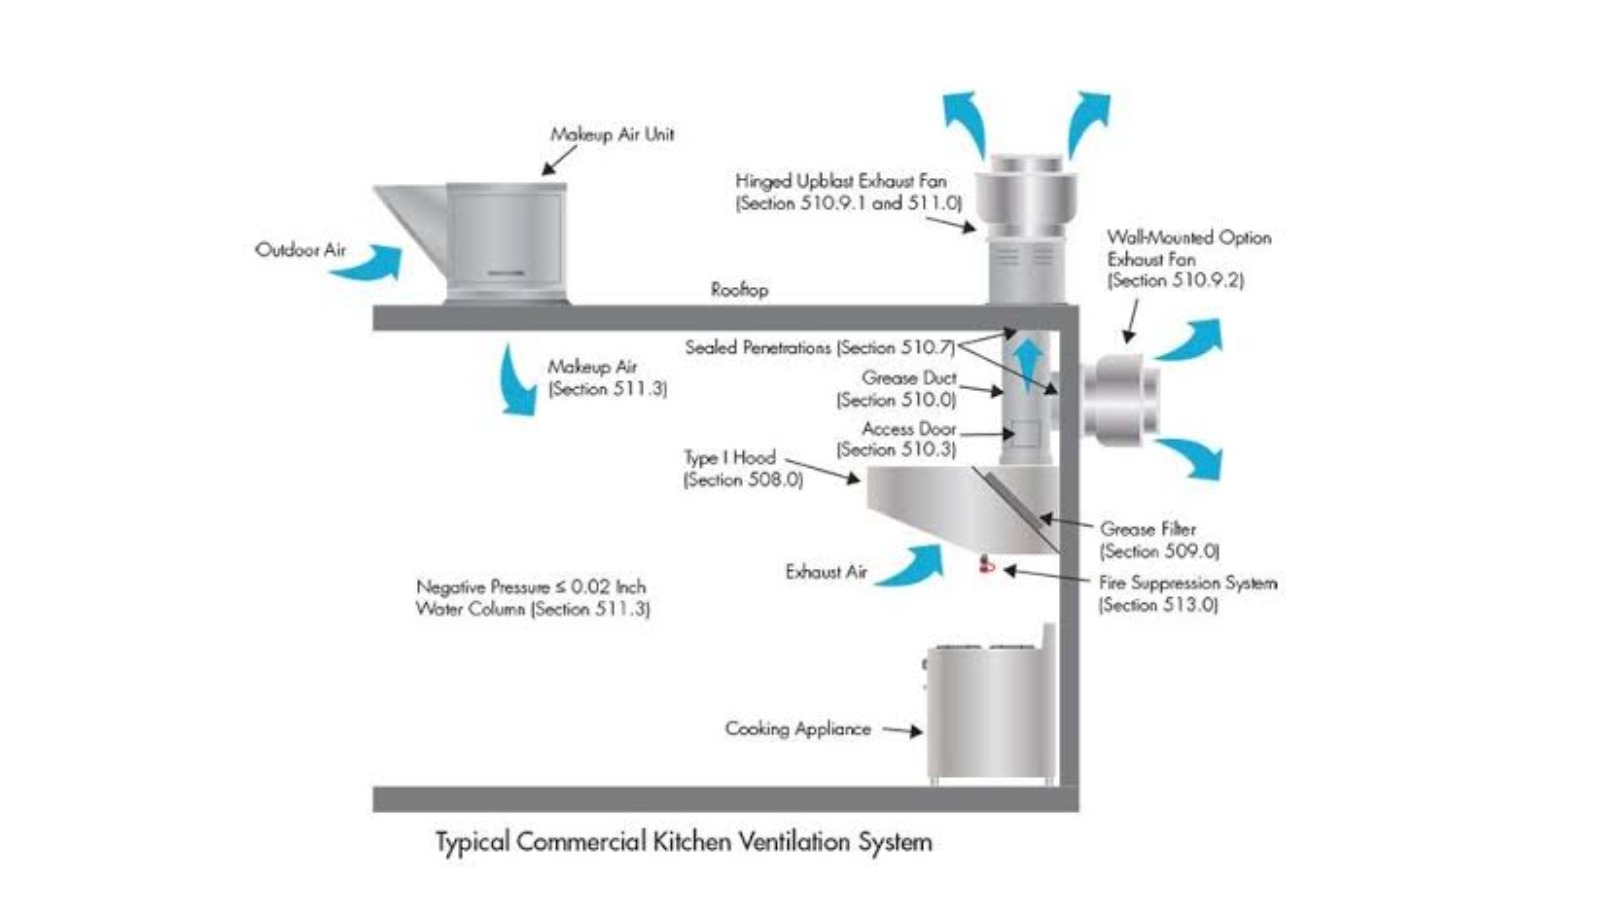 Commercial kitchen ventilation